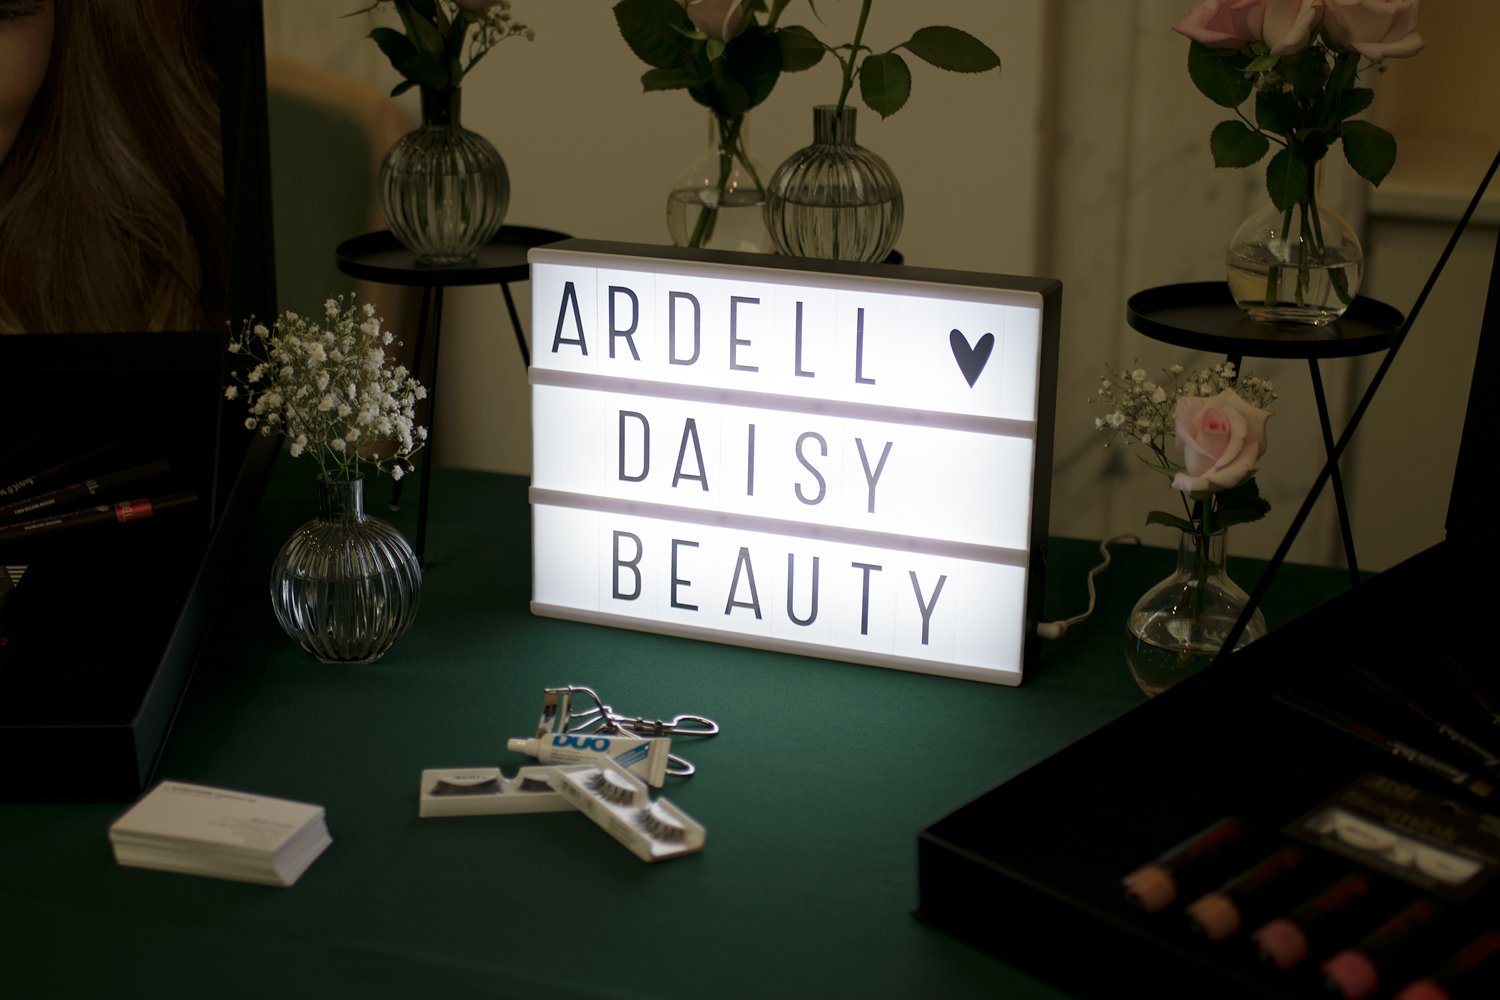 daisy beauty rom 2017